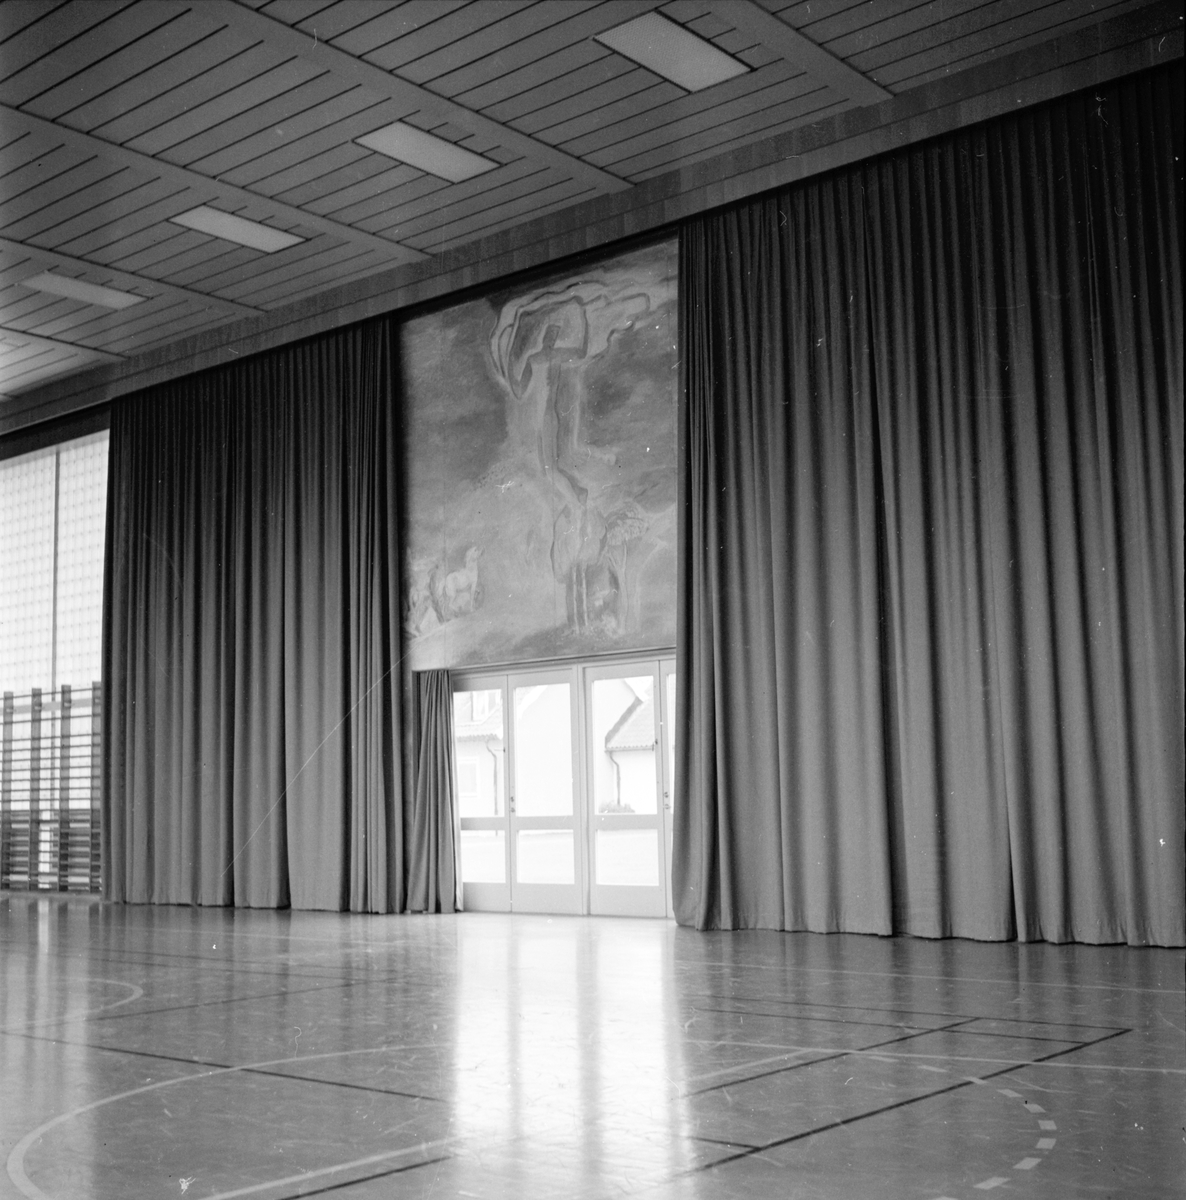 Folkhögskolan Bollnäs,
Gymnastiksalen,
3 Oktober 1963